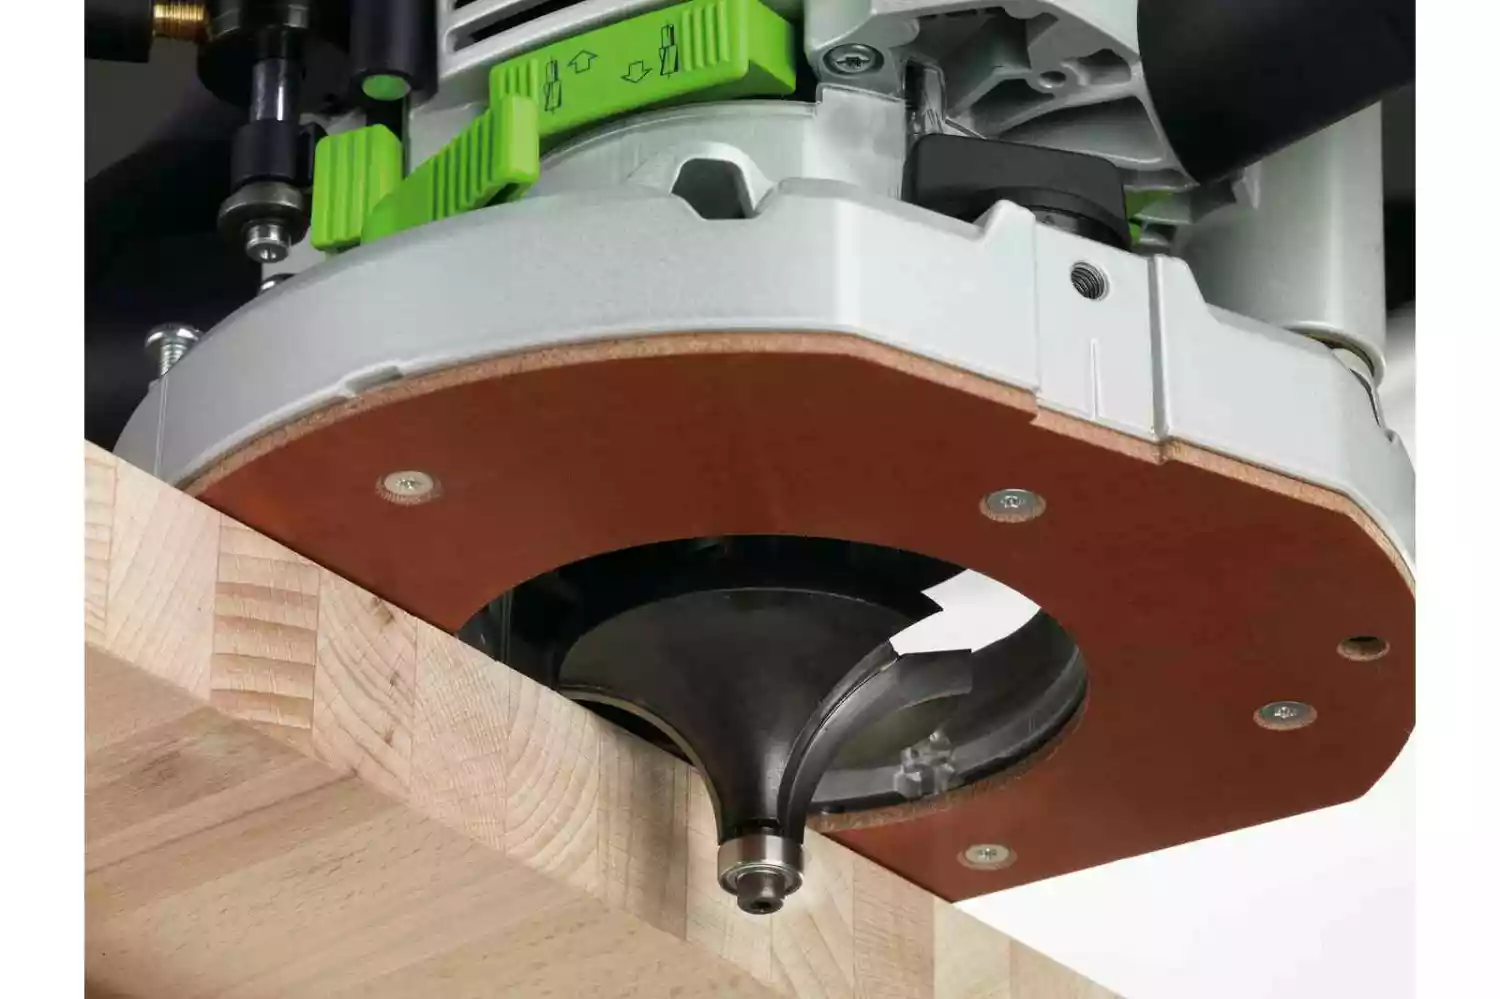 Défonceuse OF 2200 EB Plus Festool - L'outil à bois - Spécialiste de la  machine à bois